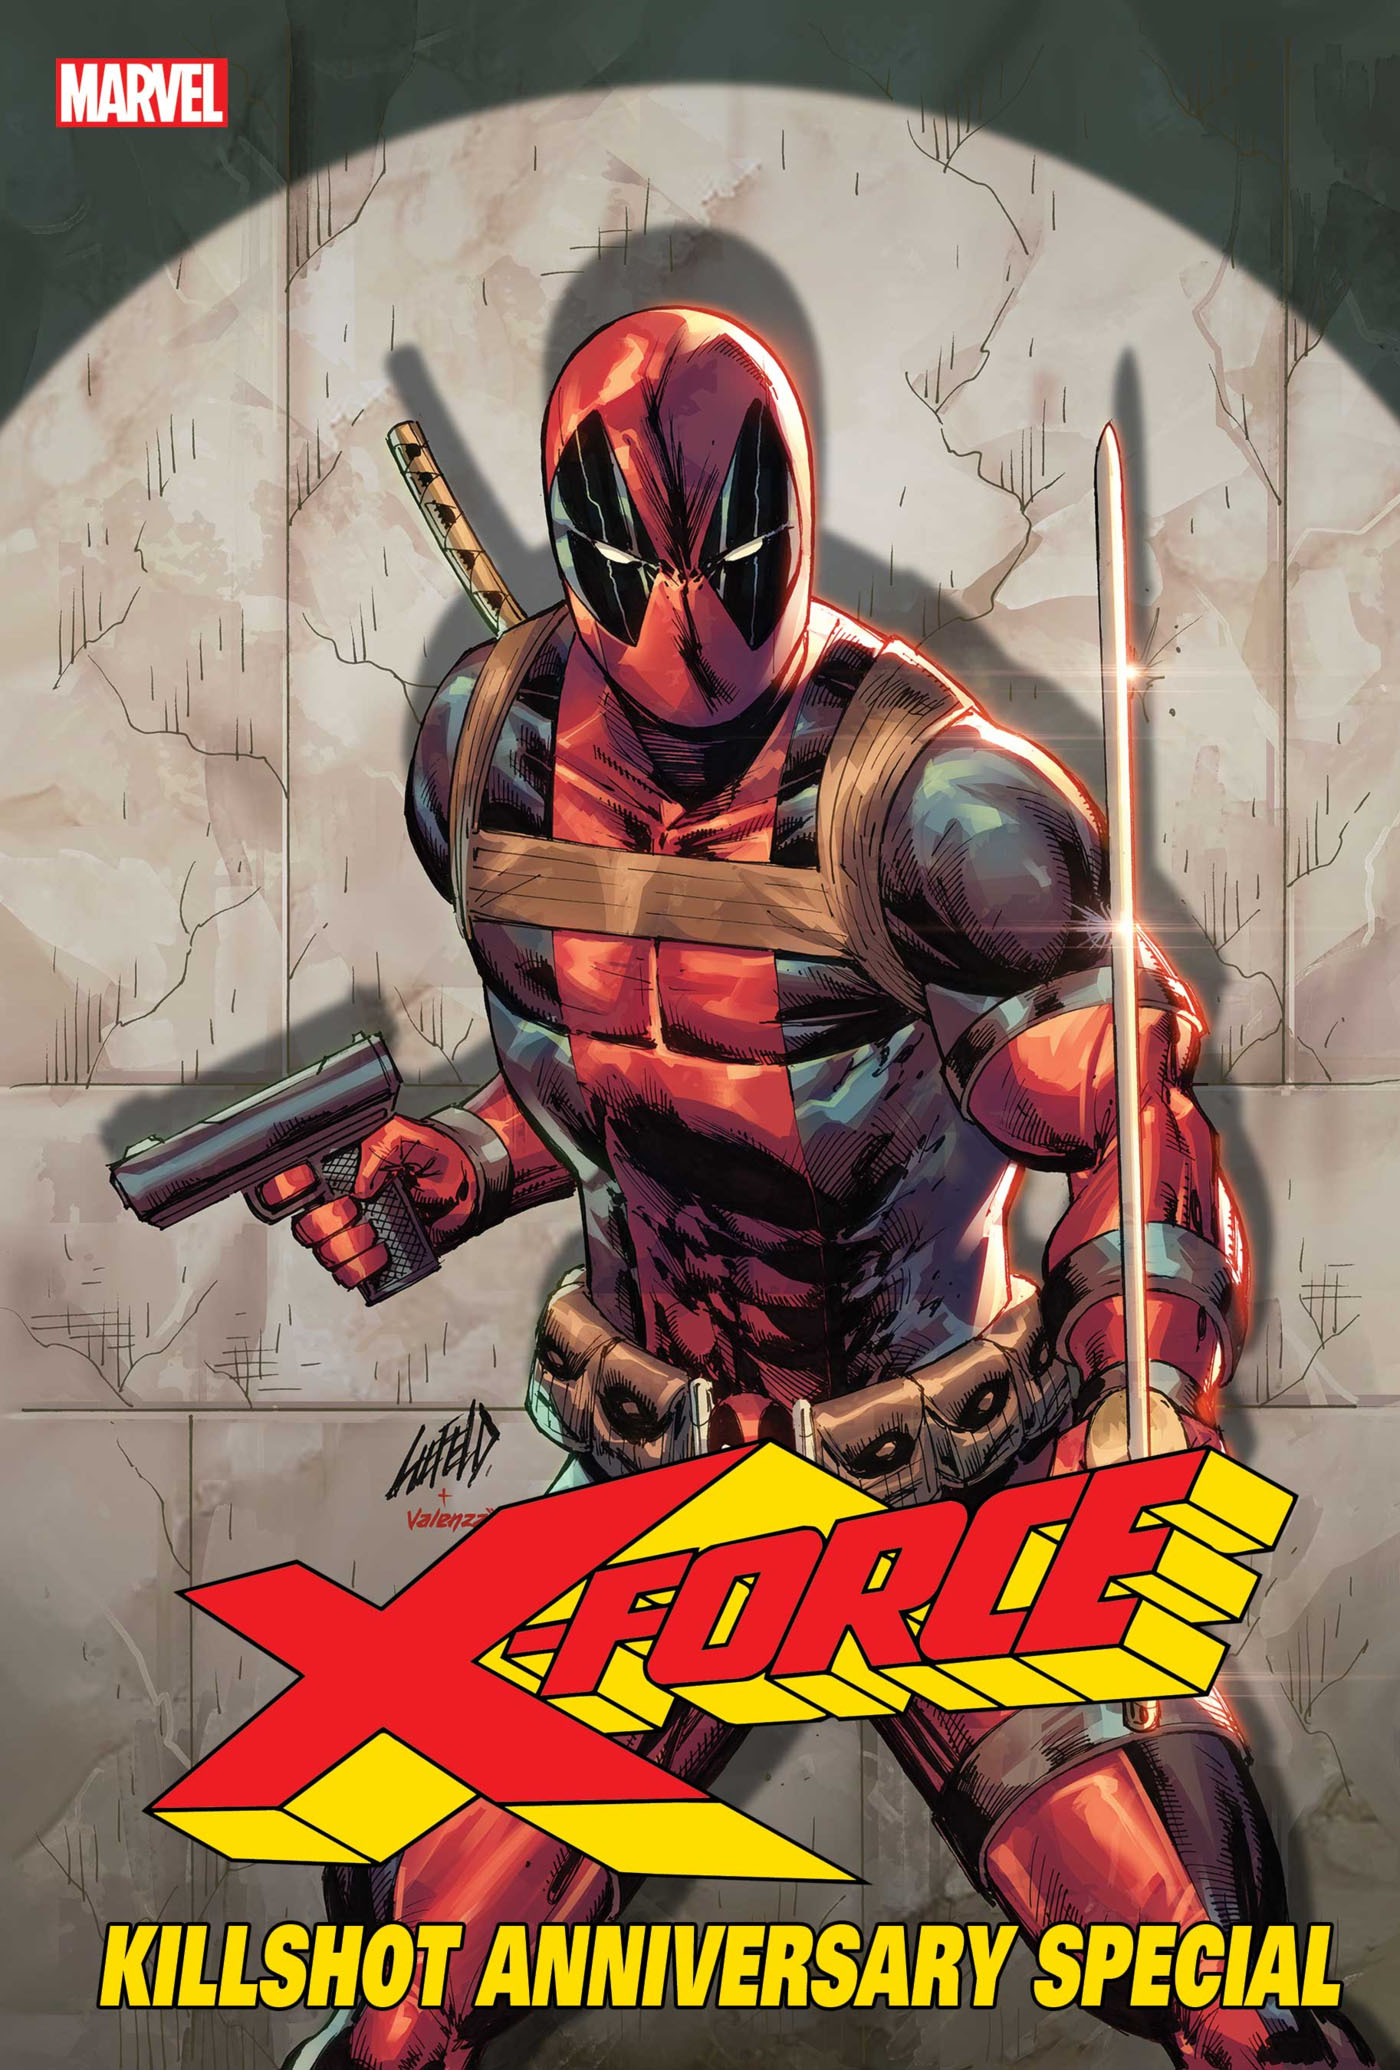 X-Force: Killshot Yıldönümü Özel 1 Numarası